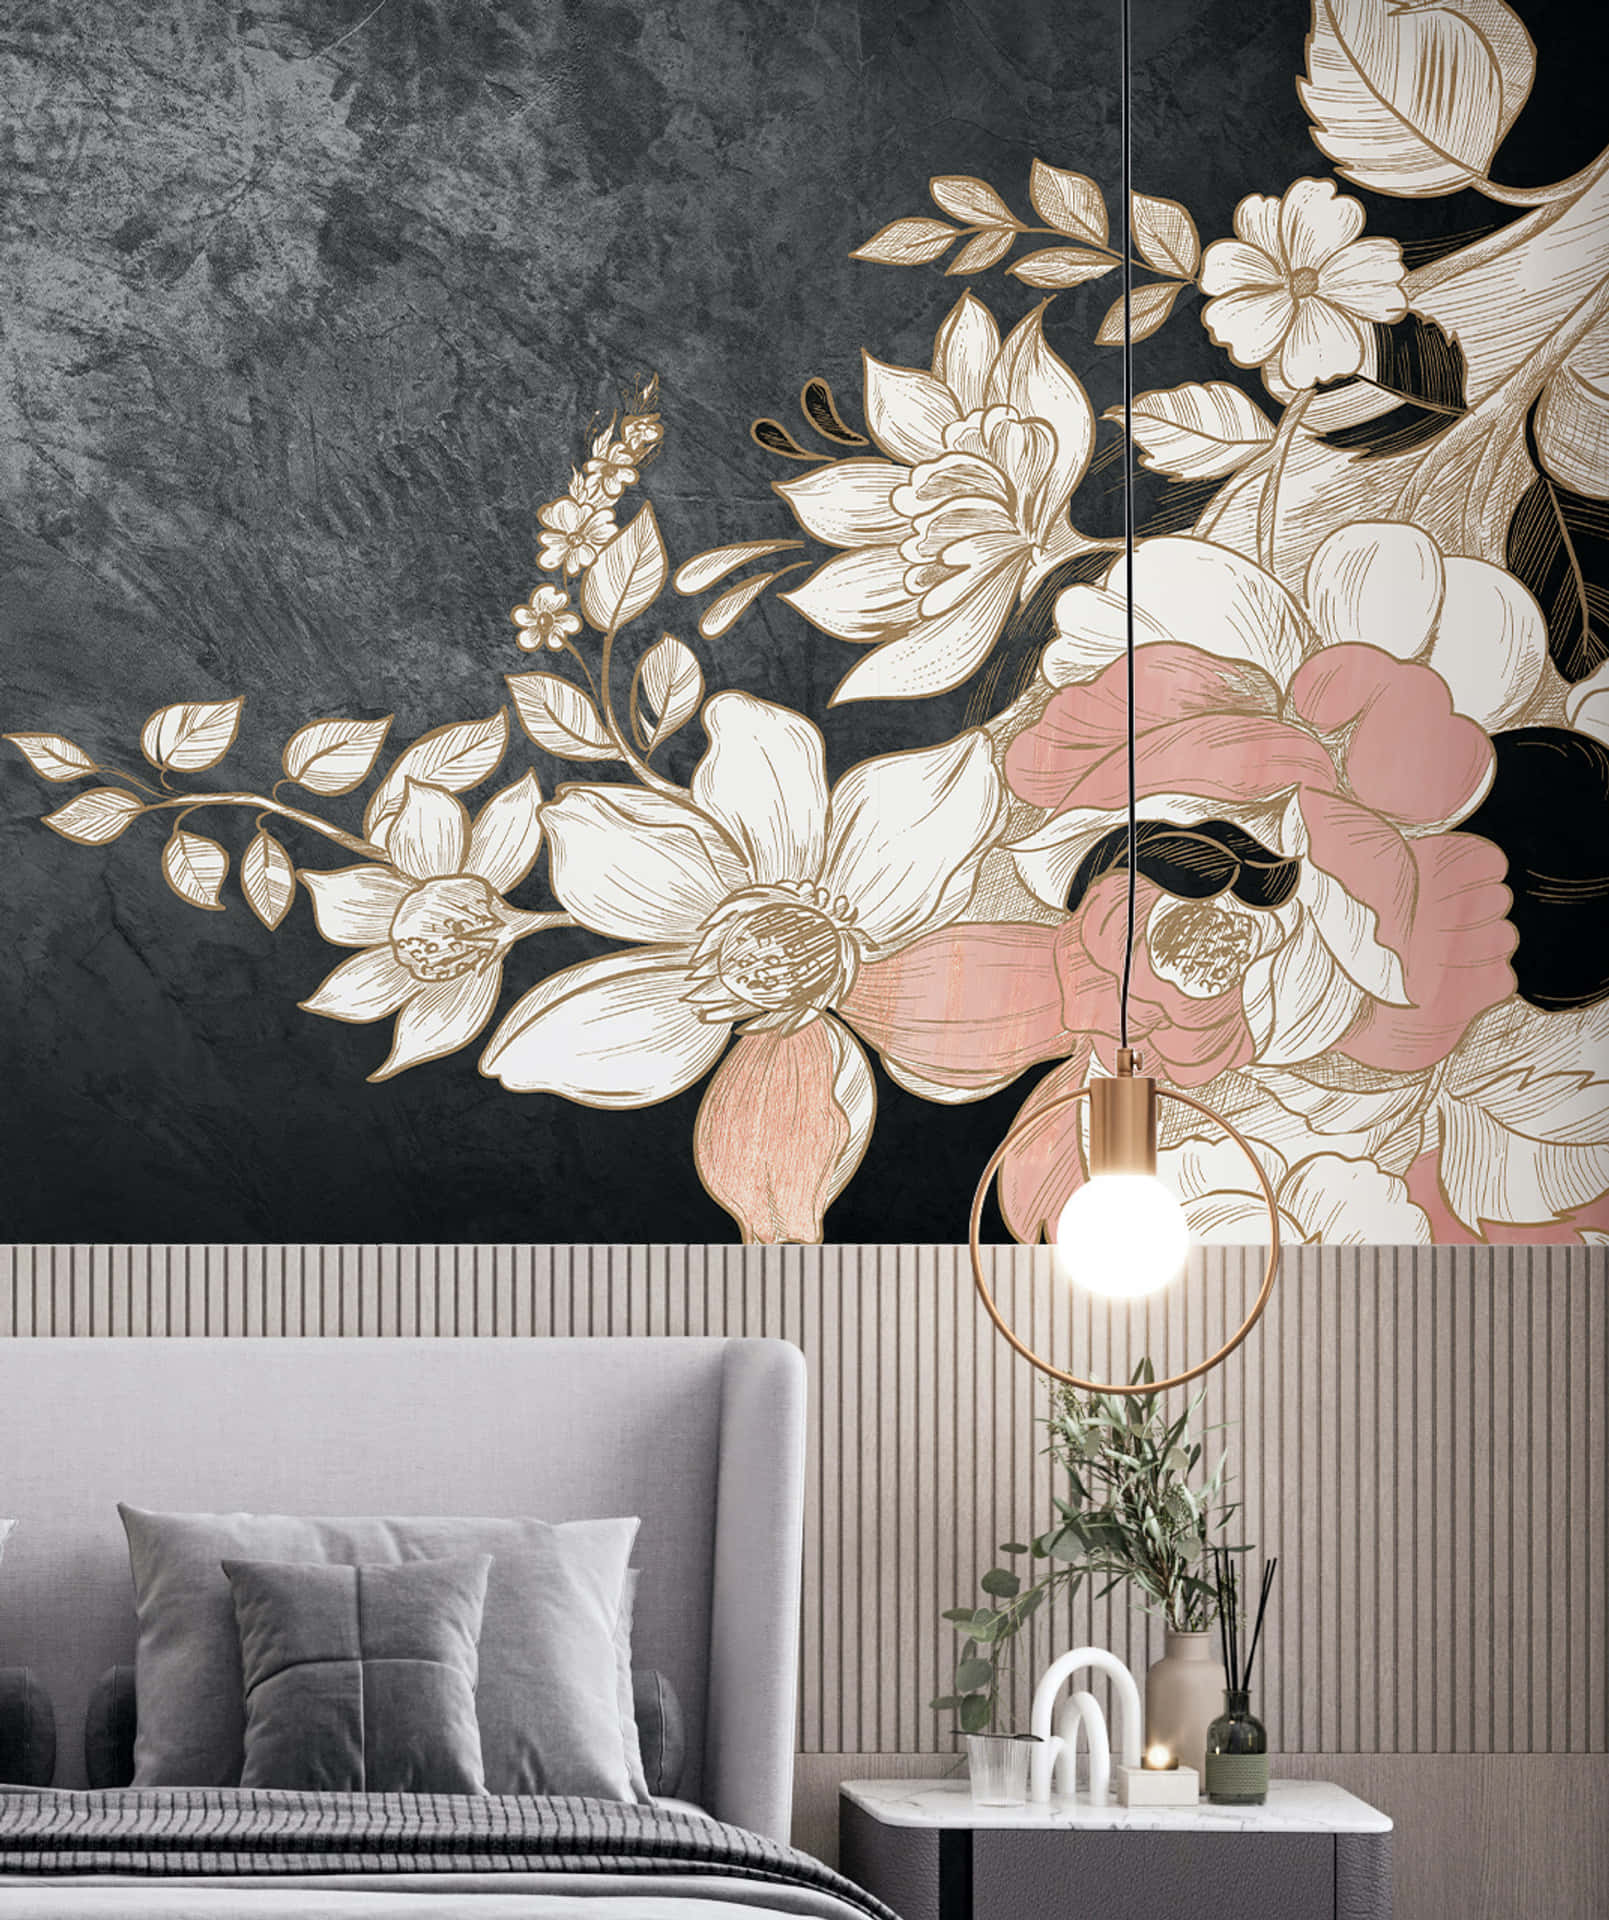 Schwarzesund Pinkes Blumen-schlafzimmer Design. Wallpaper